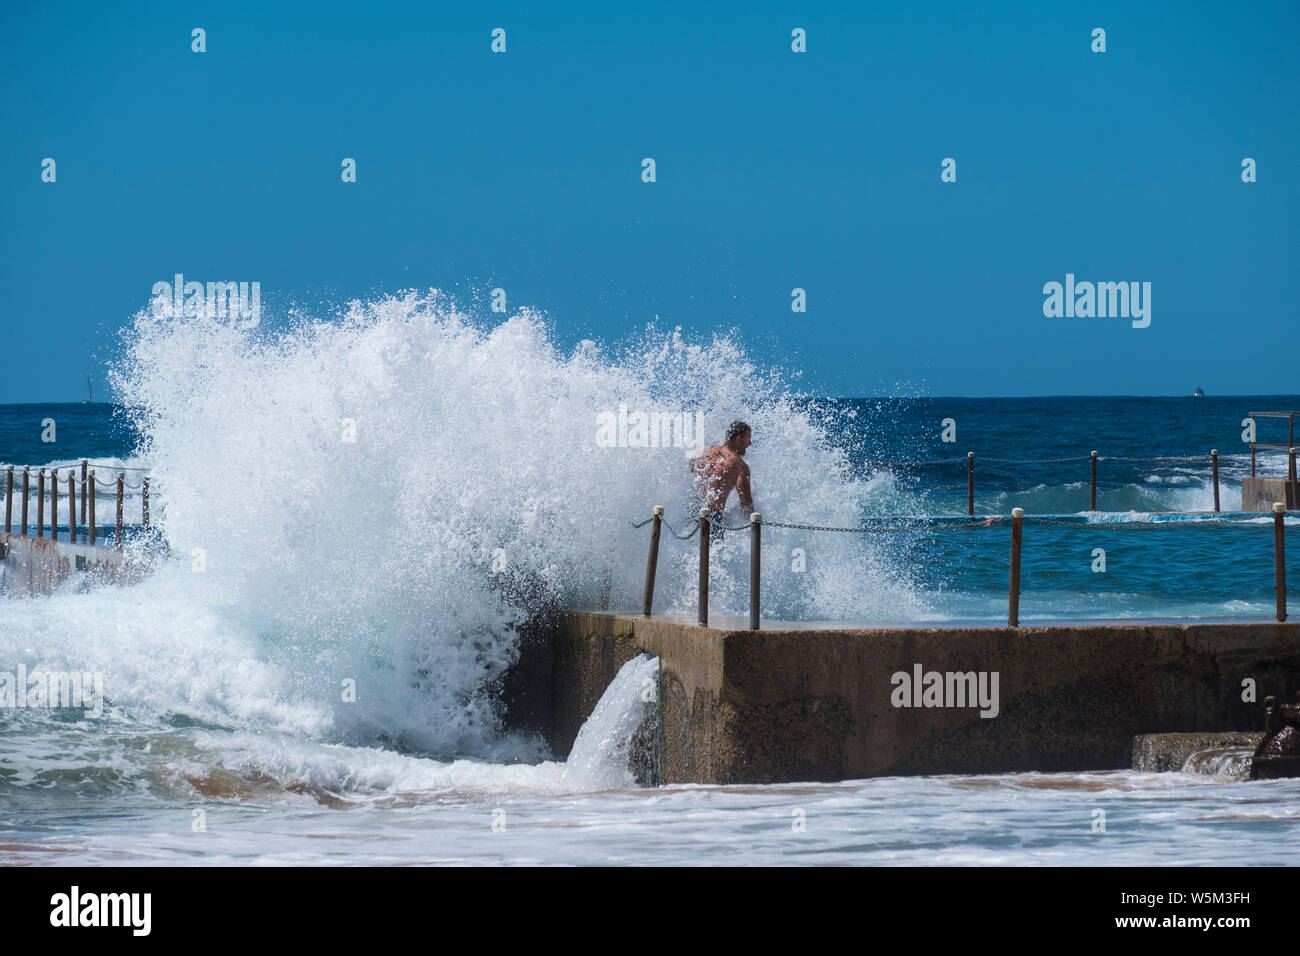 Una ola se estrella en un muro de un océano piscina. Los bañistas disfruta de la emoción de la pulverización. Foto de stock